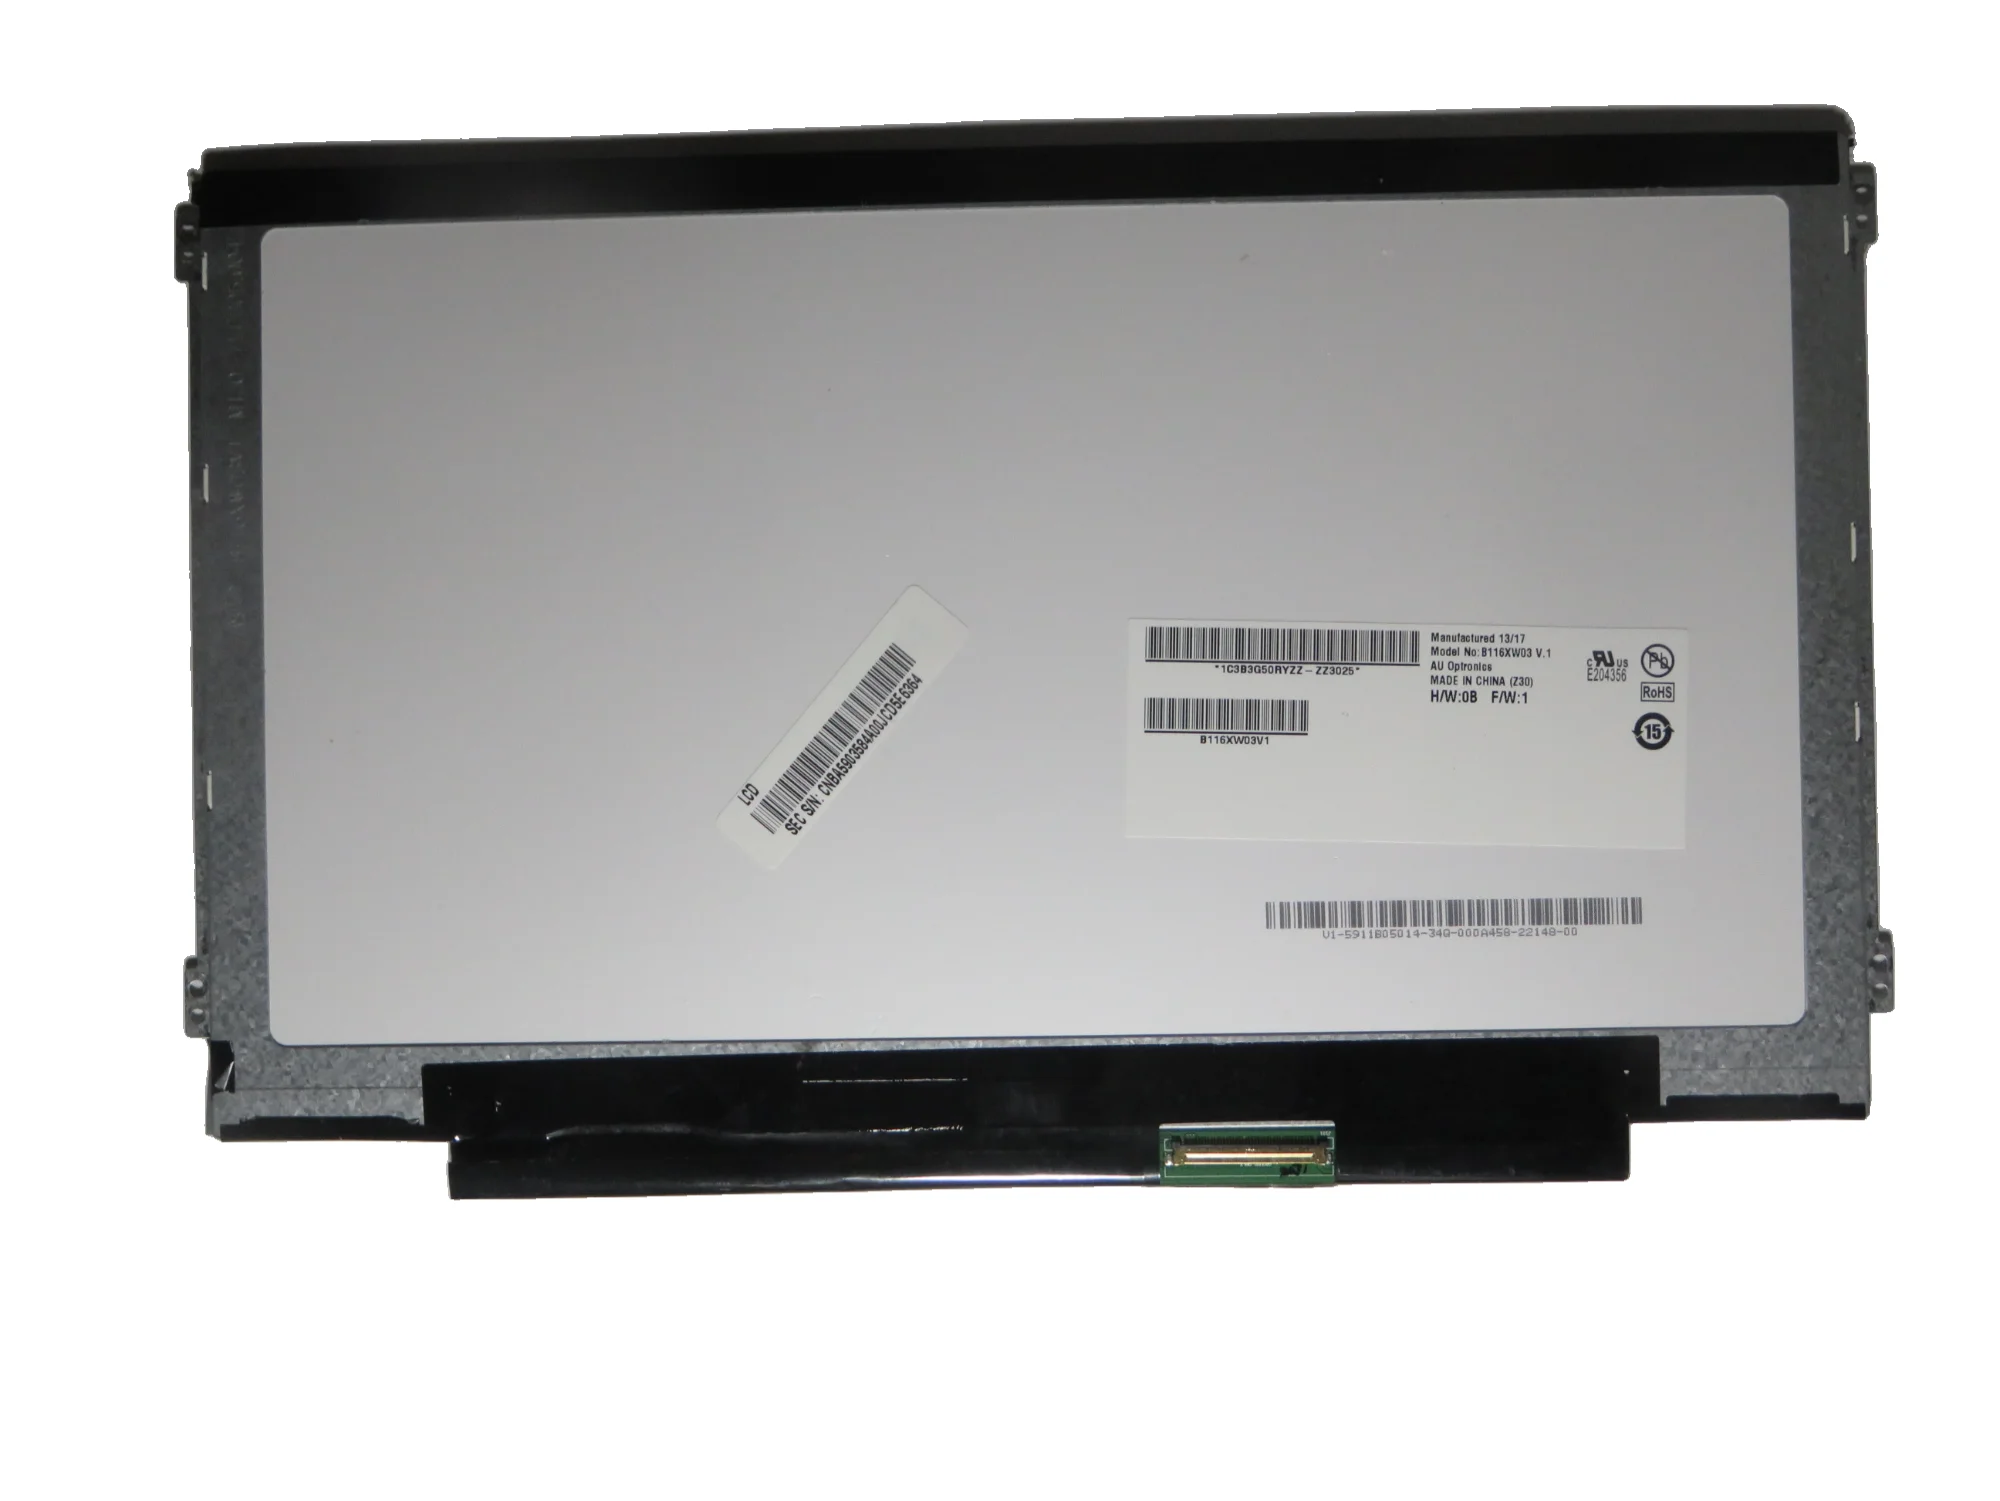 

Тонкая светодиодная матрица 11,6 дюйма для ноутбука Lenovo ideapad S210 S206 U160 thinkpad X131E E145 X130E X121E E130 E135 E125, ЖК-экран